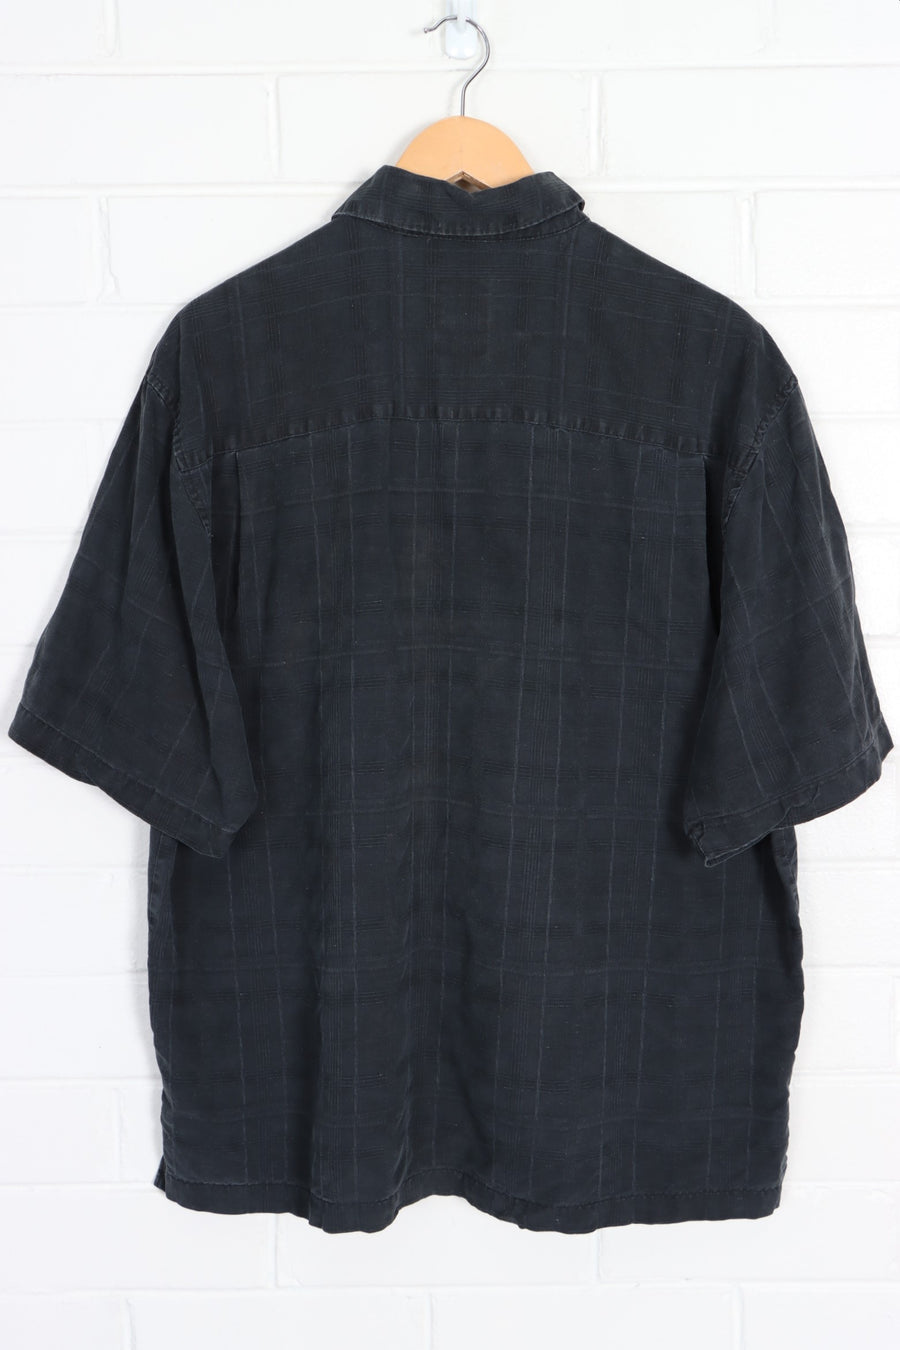 JAMAICA JAXX Printed Black Hawaiian Silk Shirt (L)